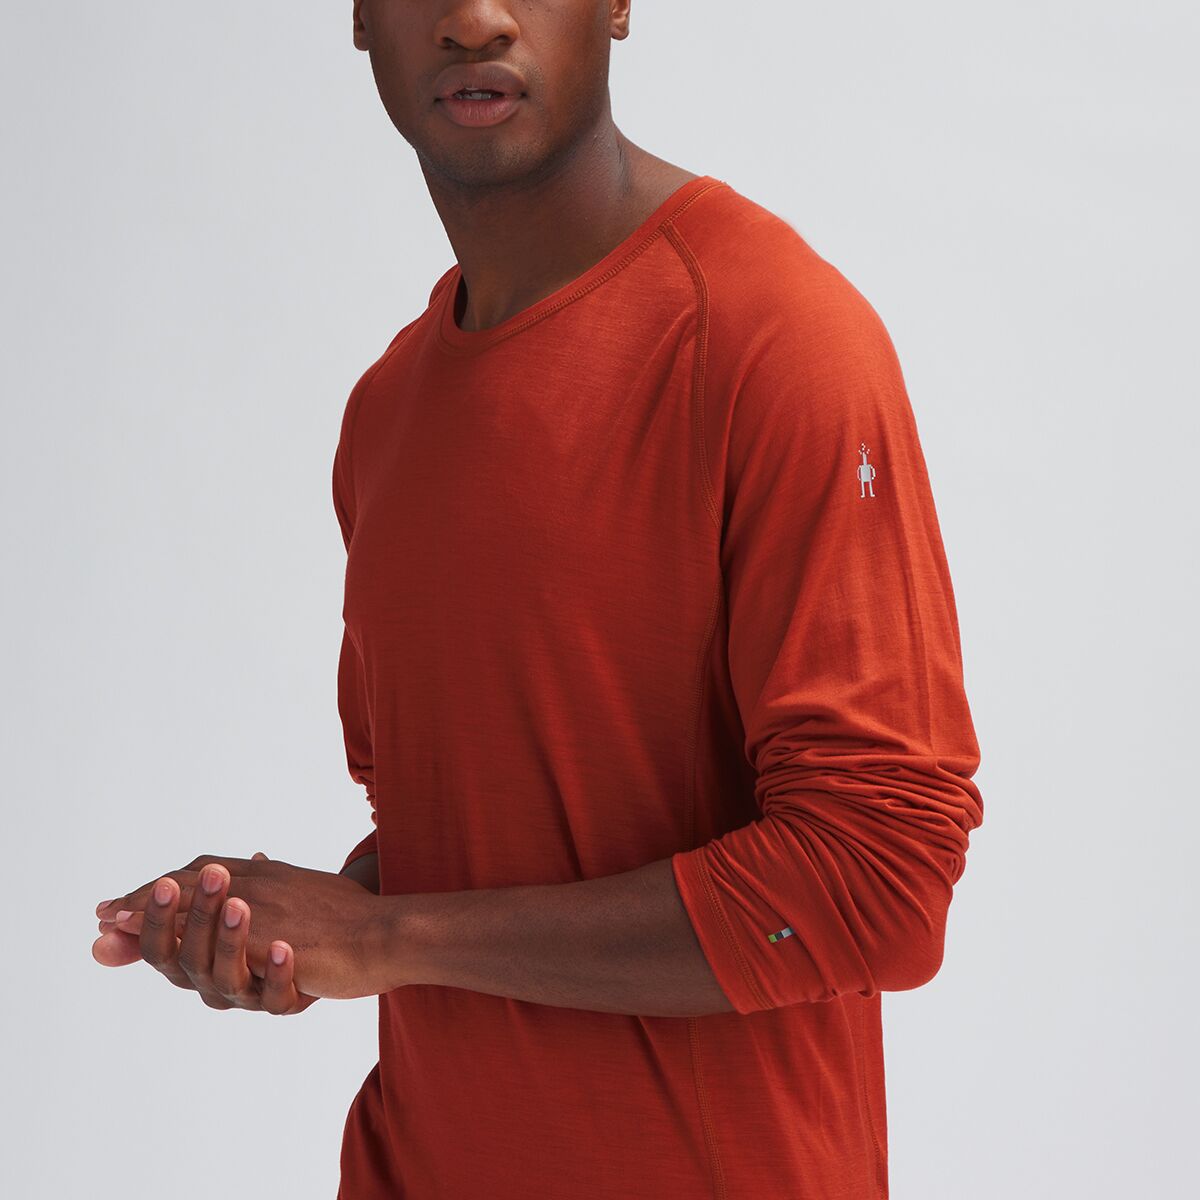 Smartwool Merino Sport Ultralite Long-Sleeve Shirt - Men's - Clothing